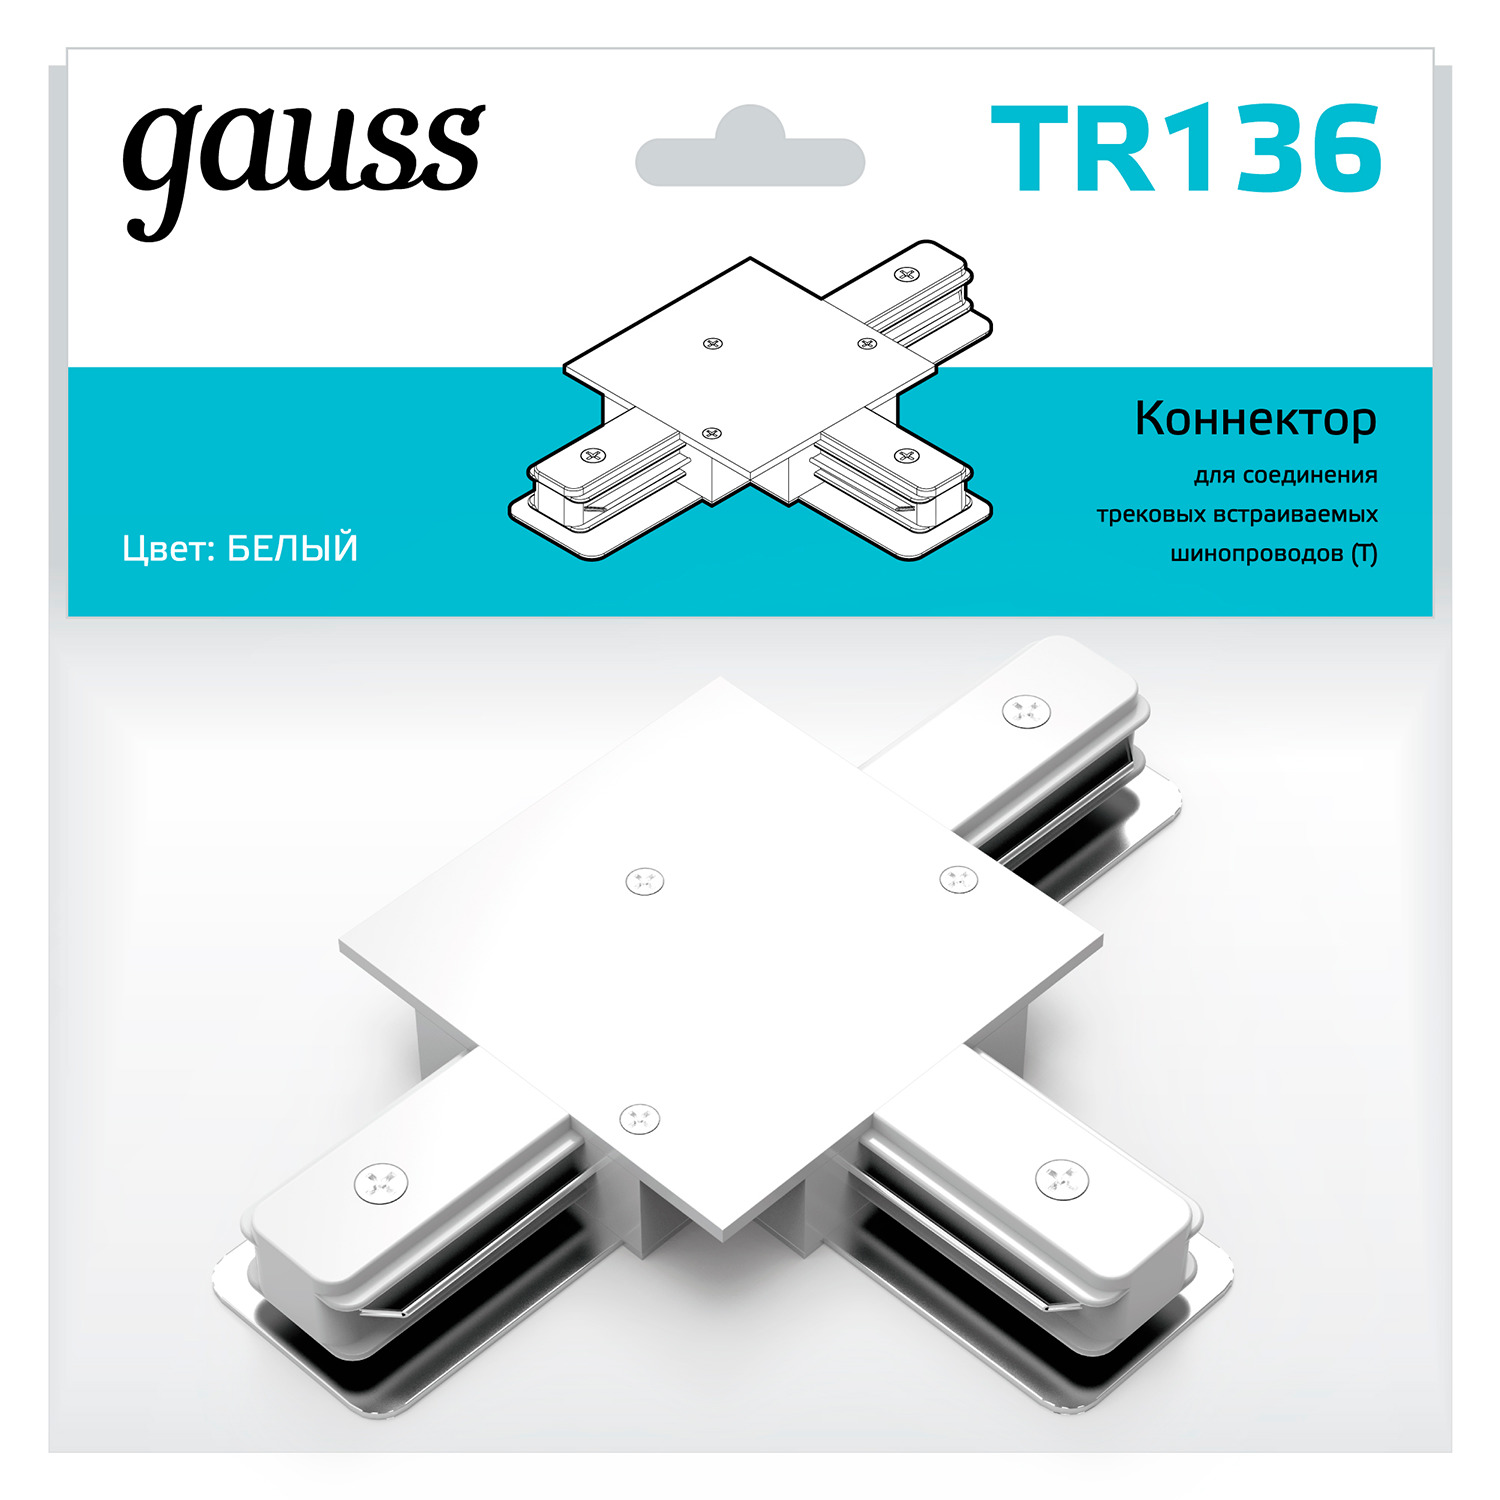 gauss коннектор для встраиваемых трековых шинопроводов угловой l белый tr134 50 шт Коннектор Gauss для встраиваемых трековых шинопроводов (T) белый